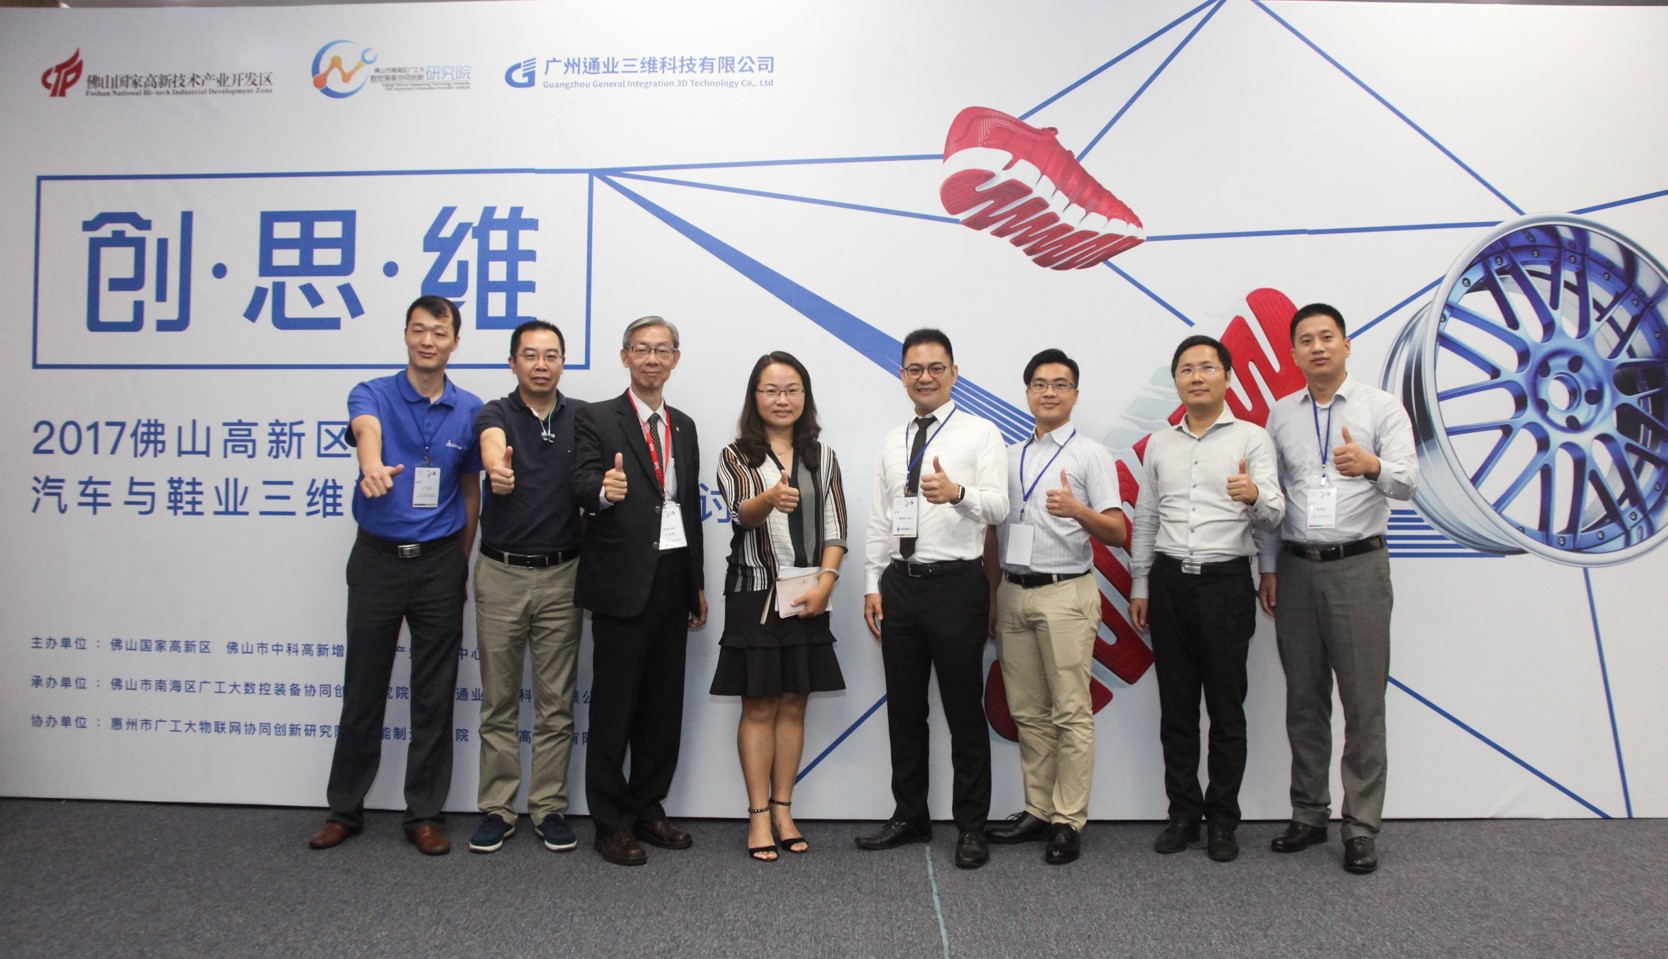 廣州通業正式進軍中國華南市場 強攻汽車和鞋類產業客戶 協助打造全方位3D整合方案